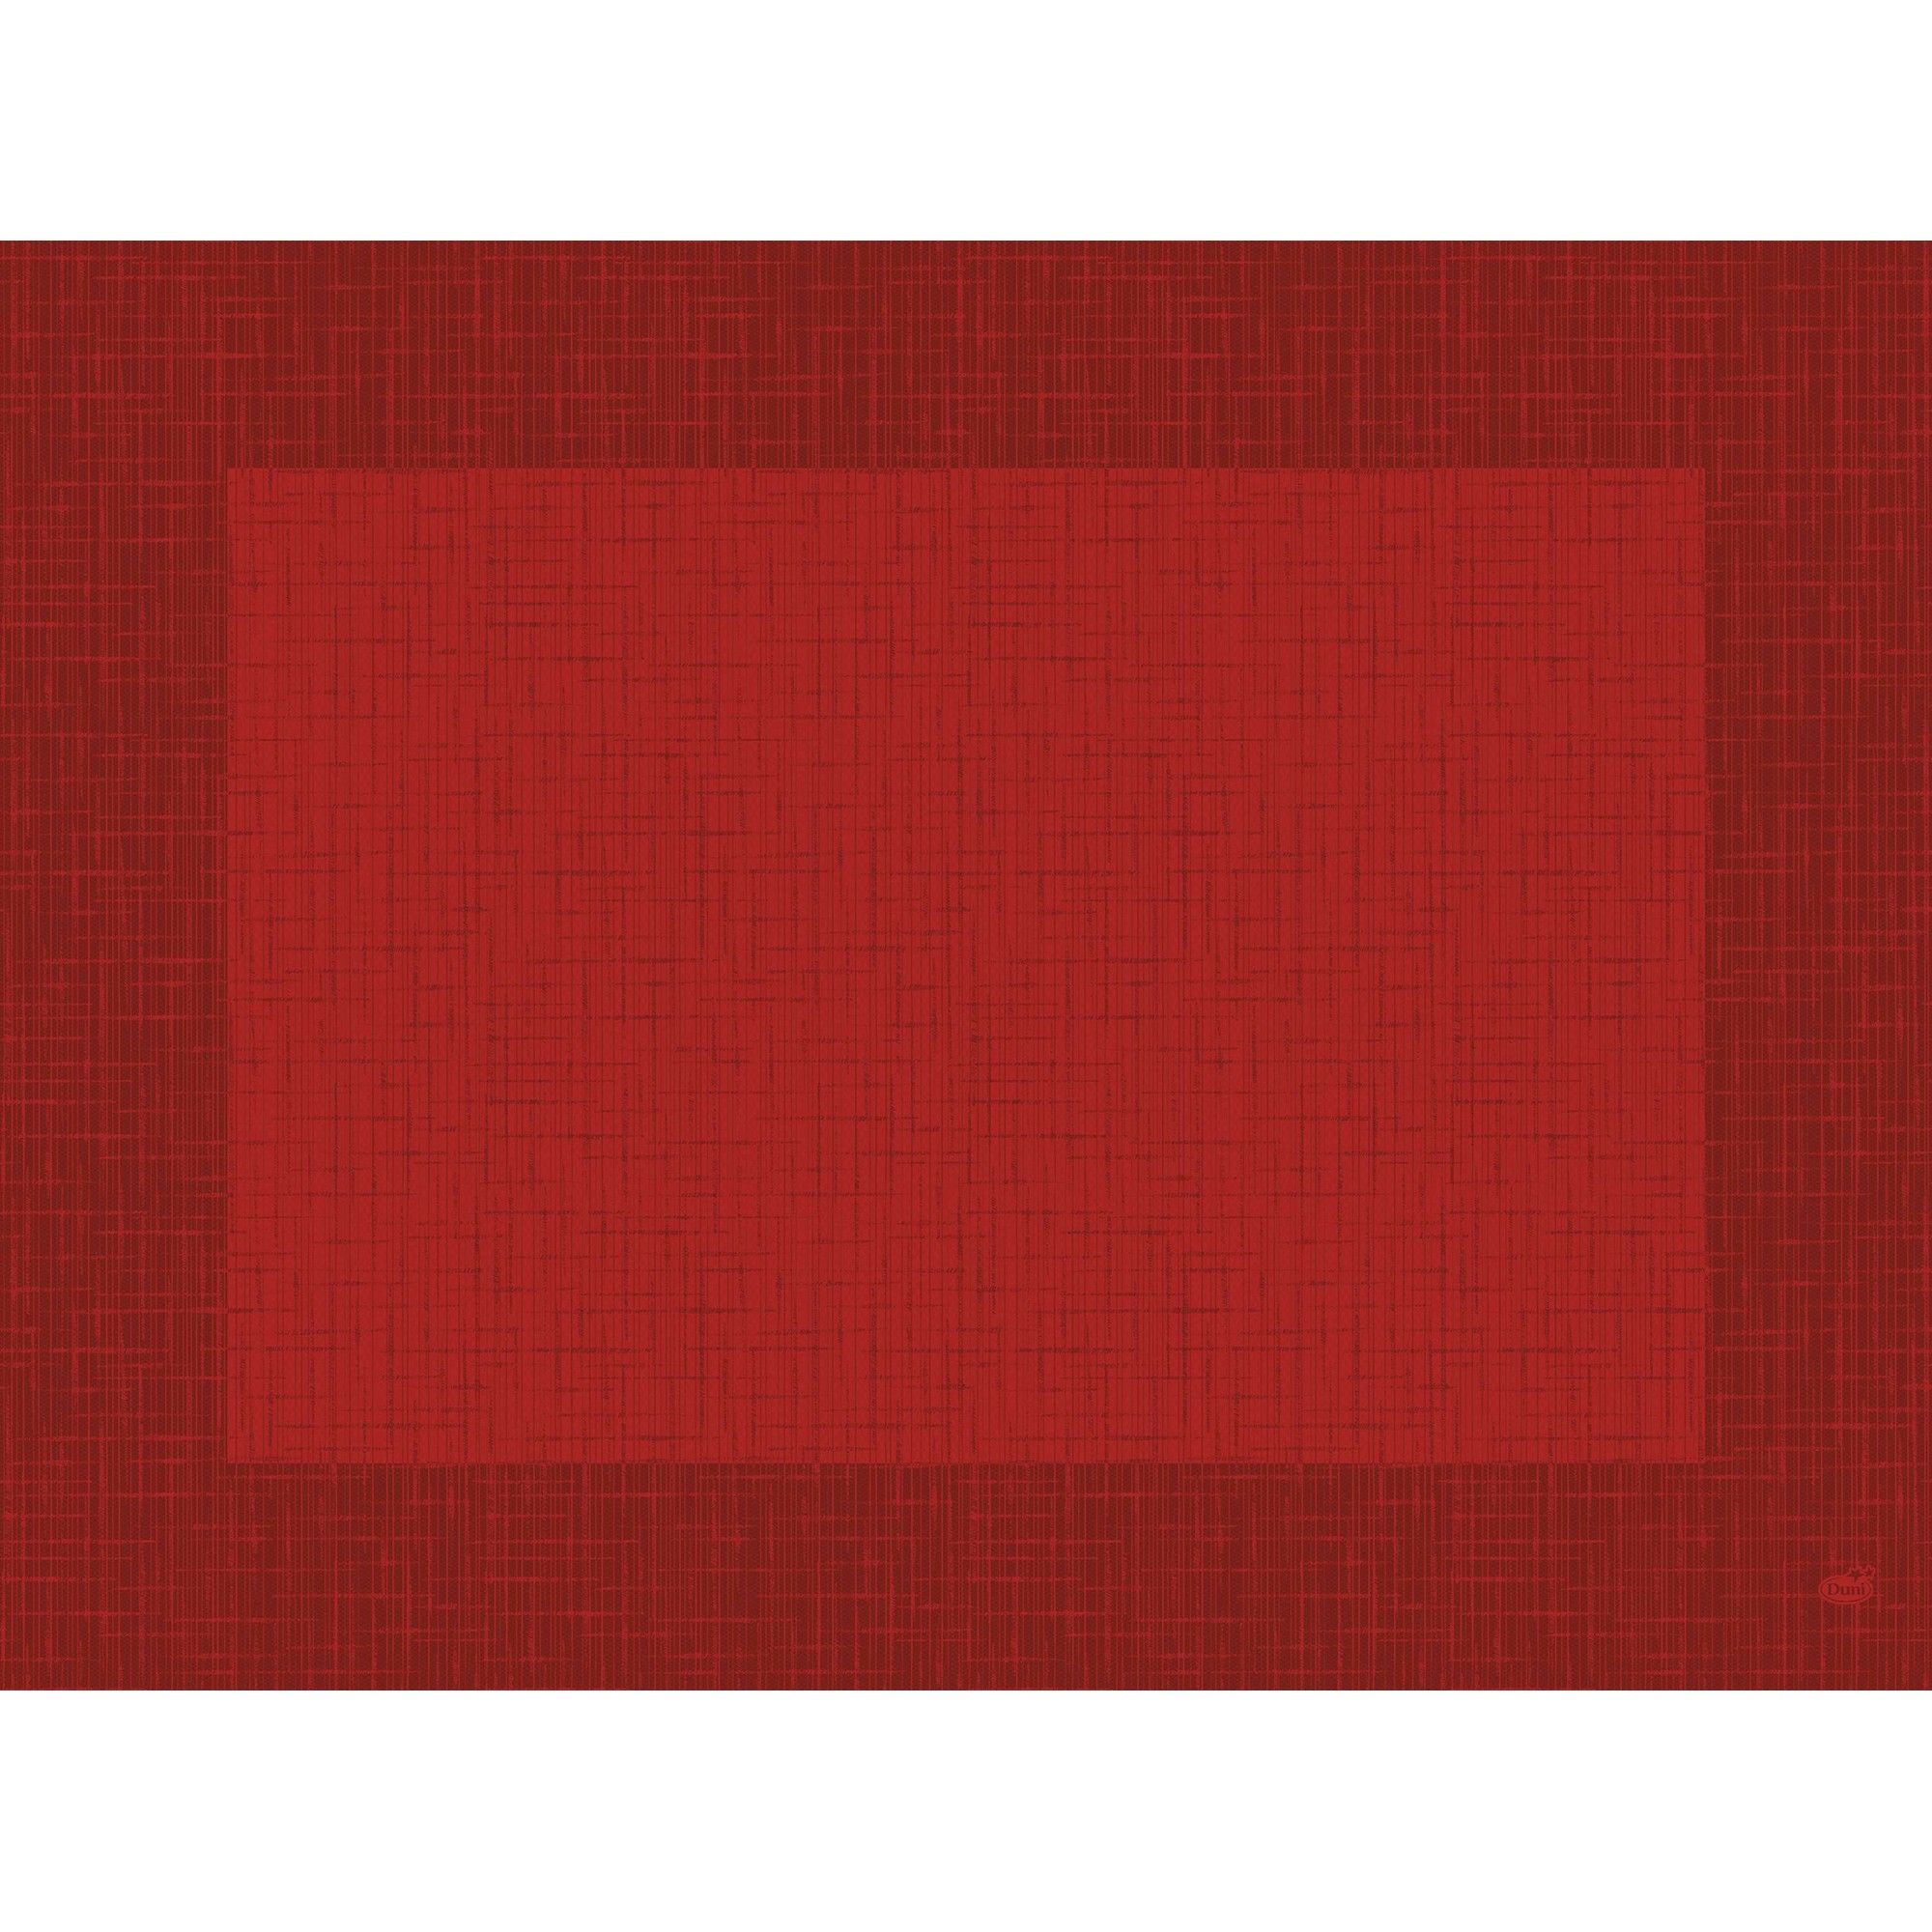 Bordbrikke d-cel linnea rød   100stk